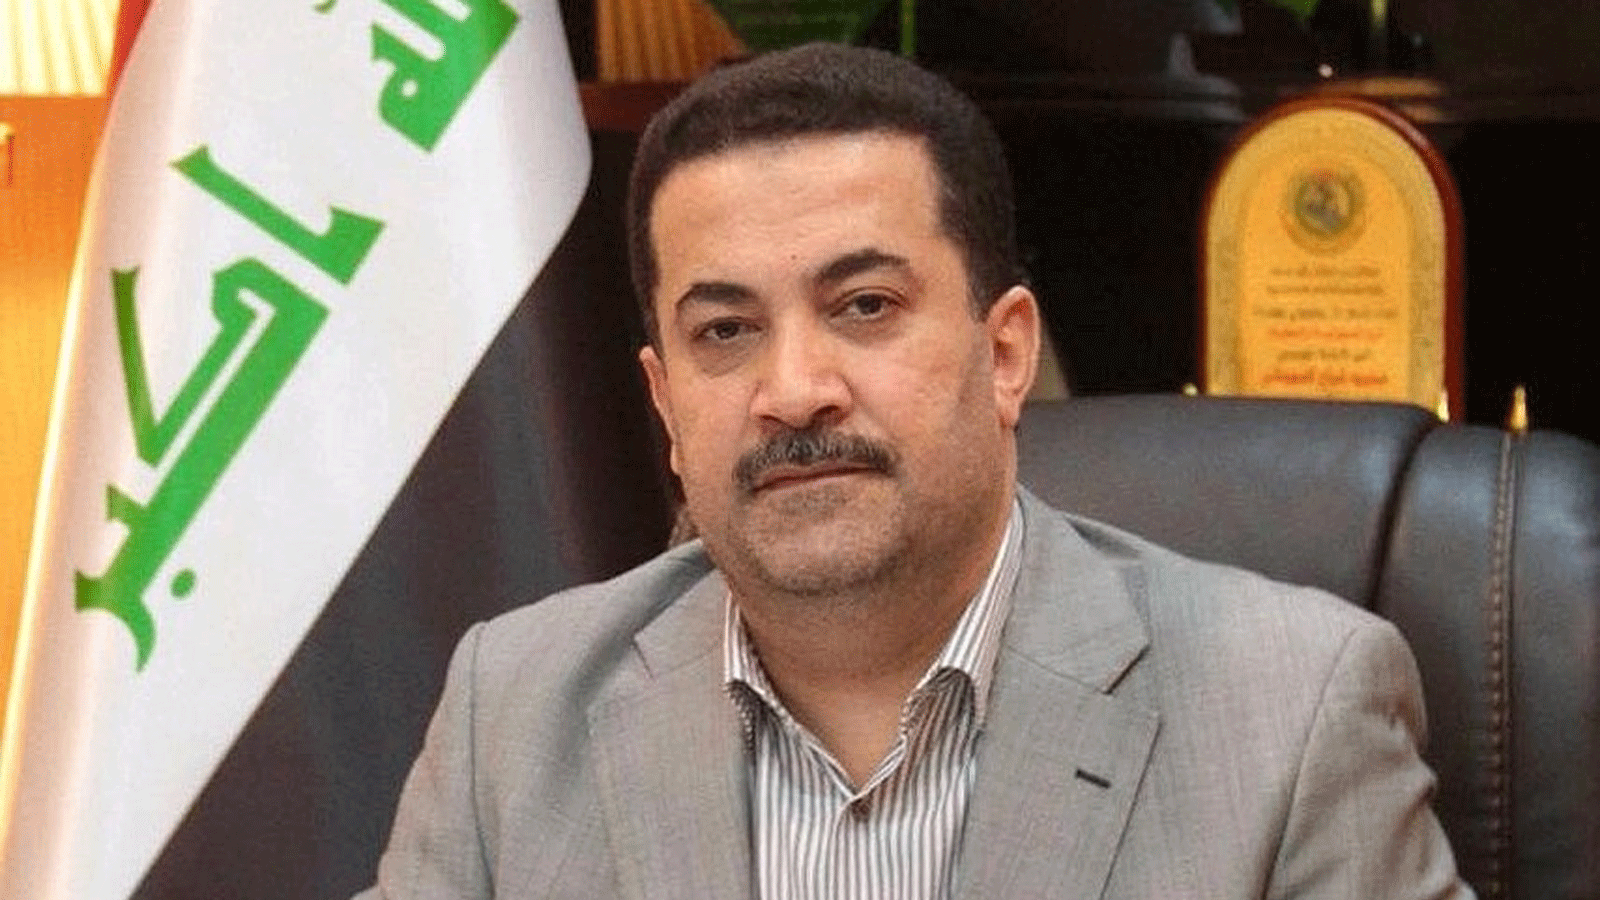 الوزير العراقي السابق محمد شياع السوداني رشحته القوى الشيعية العراقية رسميا اليوم الاثنين 25 يوليو\ تموز 2022 لتشكيل الحكومة الجديدة (تويتر)